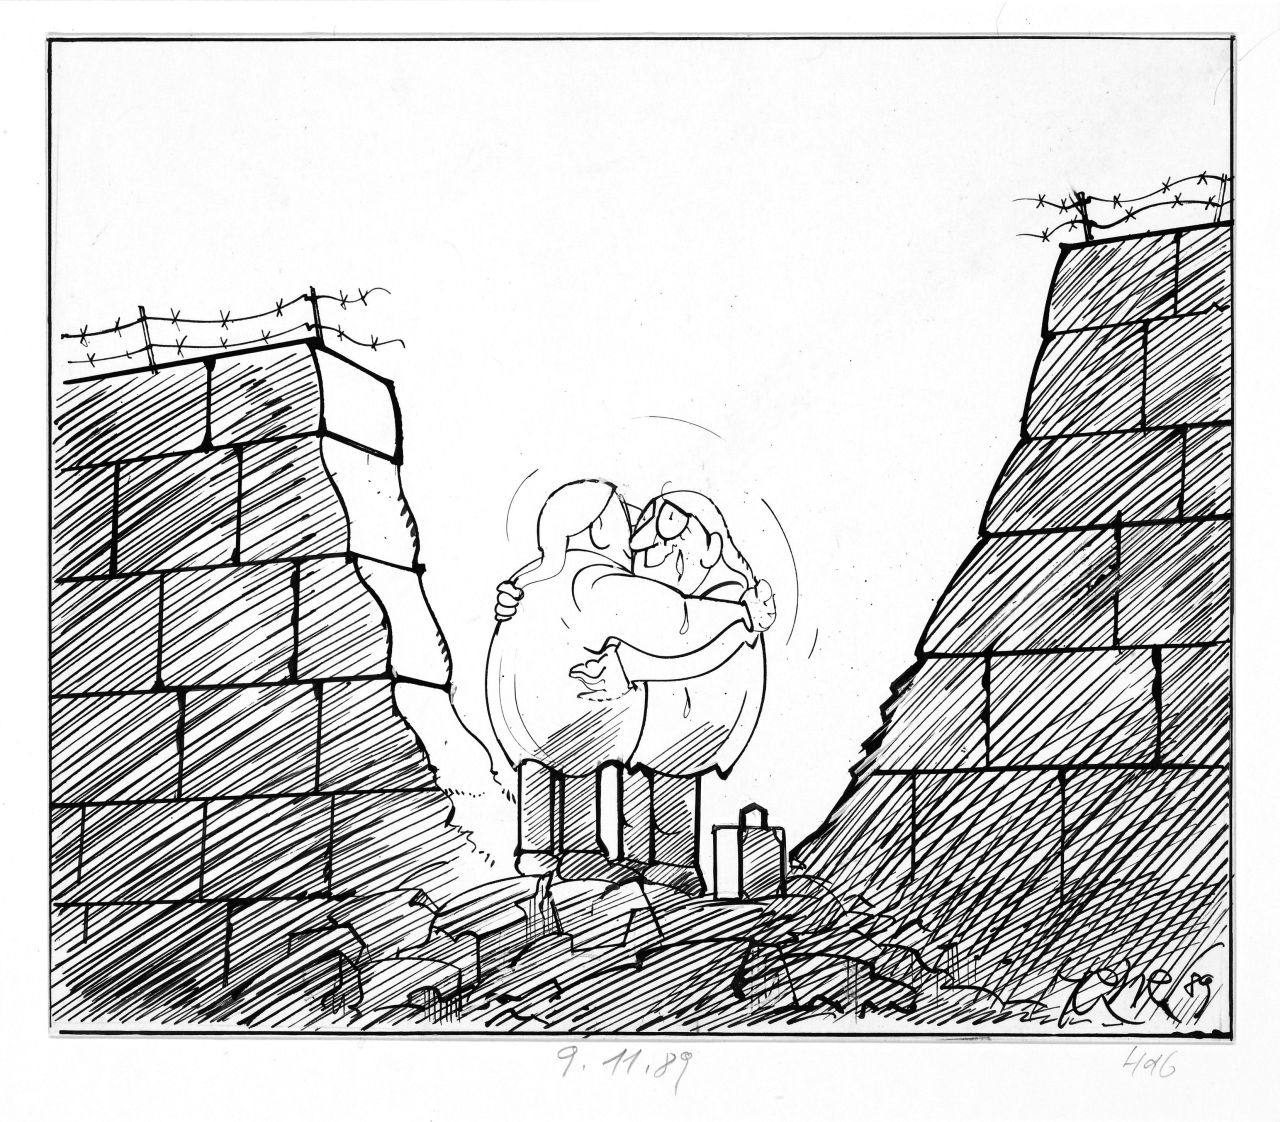 Karikatur, Motiv: zwei sogenannte deutsche Michel, die sich in Loch in der Mauer weinend umarmen; unten, links: Unterschrift Hanel und Jahr: 89; unterhalb des Bildes: handschriftliche Notiz mit Bleistift: 9.11.89.